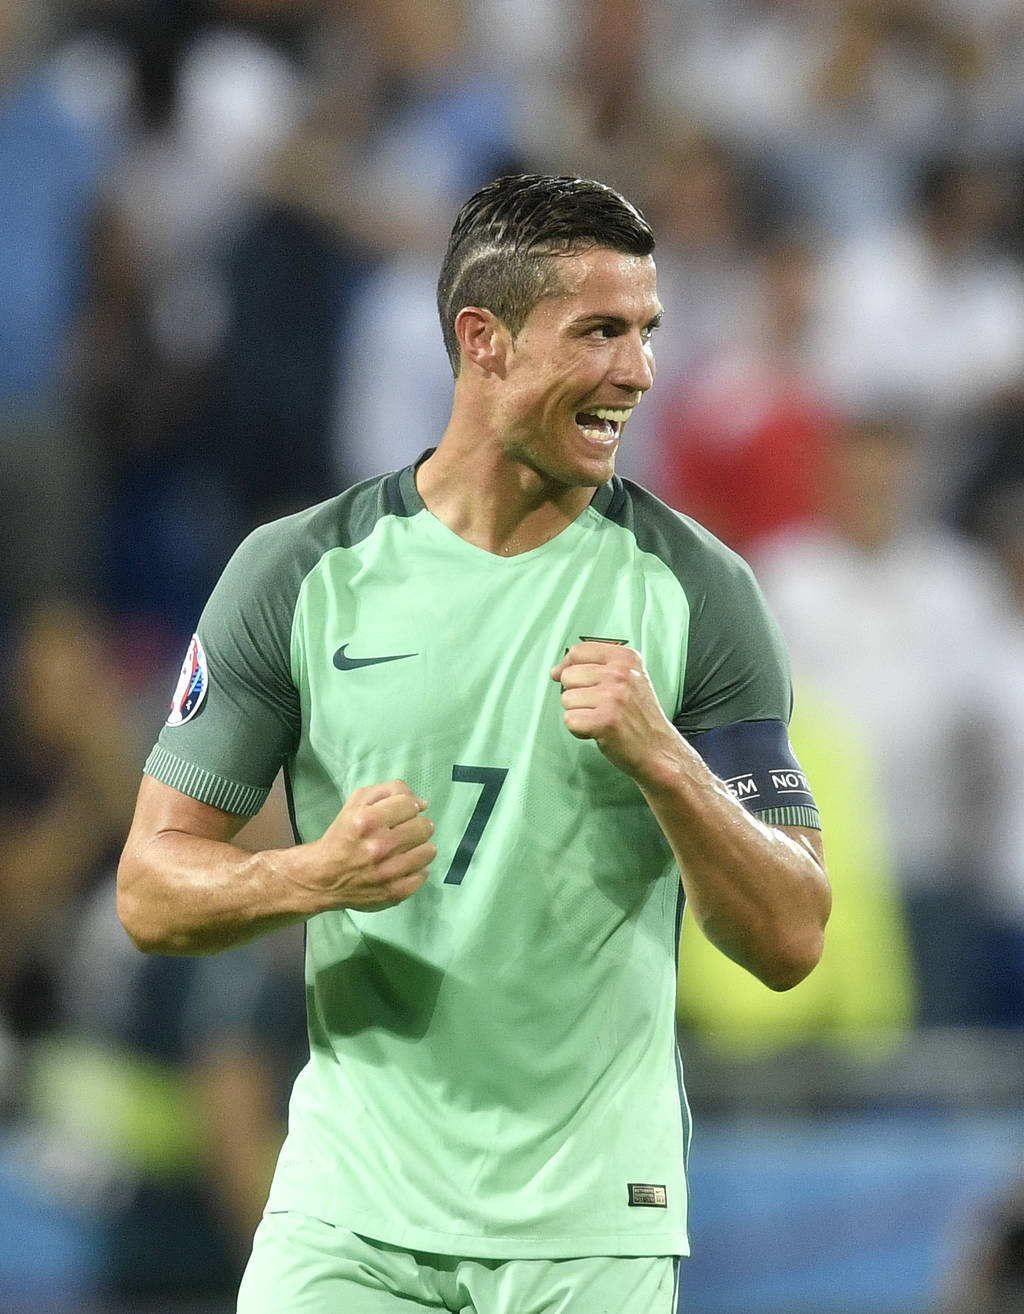 Pese a no brillar tanto en el torneo, Cristiano Ronaldo podría ganarle a Messi este año el Balón de Oro. (AP)